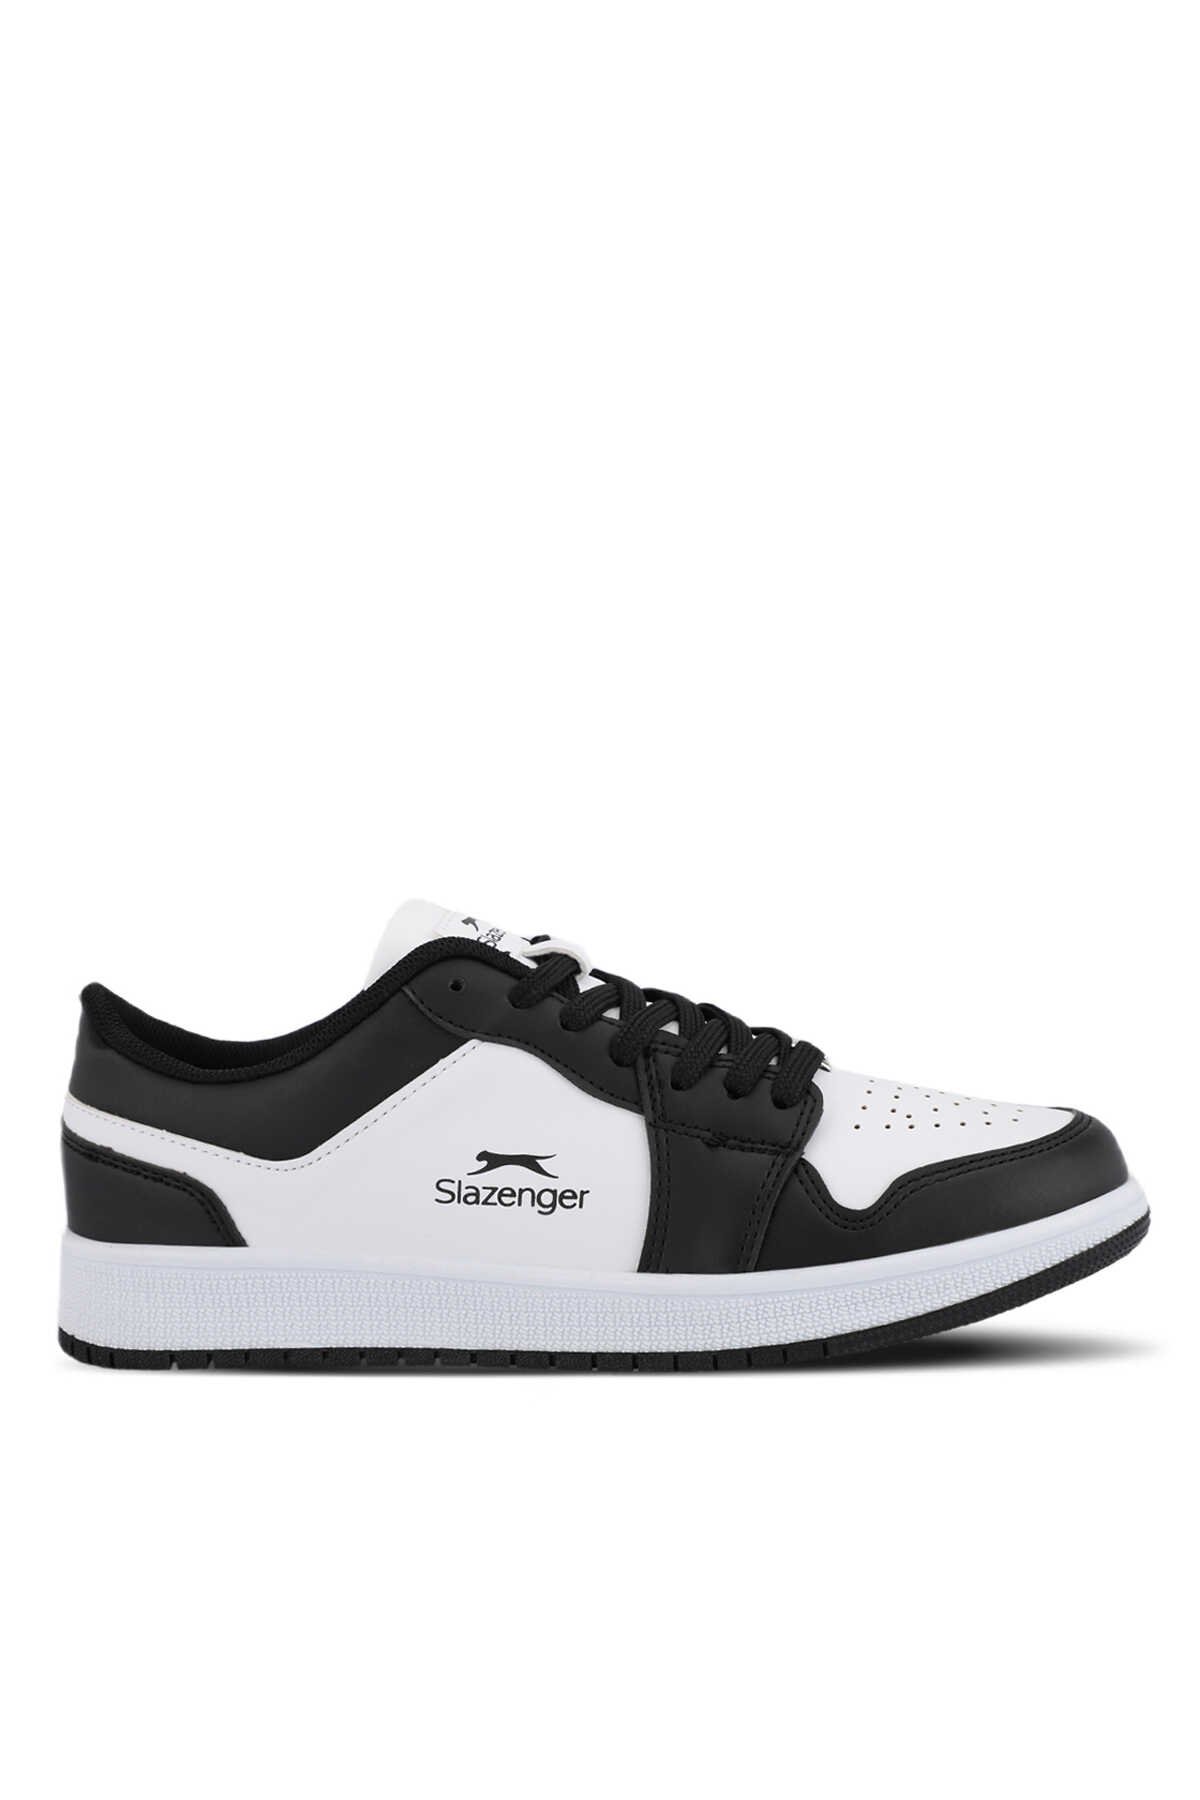 Slazenger - Slazenger PRINCE I Erkek Sneaker Ayakkabı Beyaz / Siyah